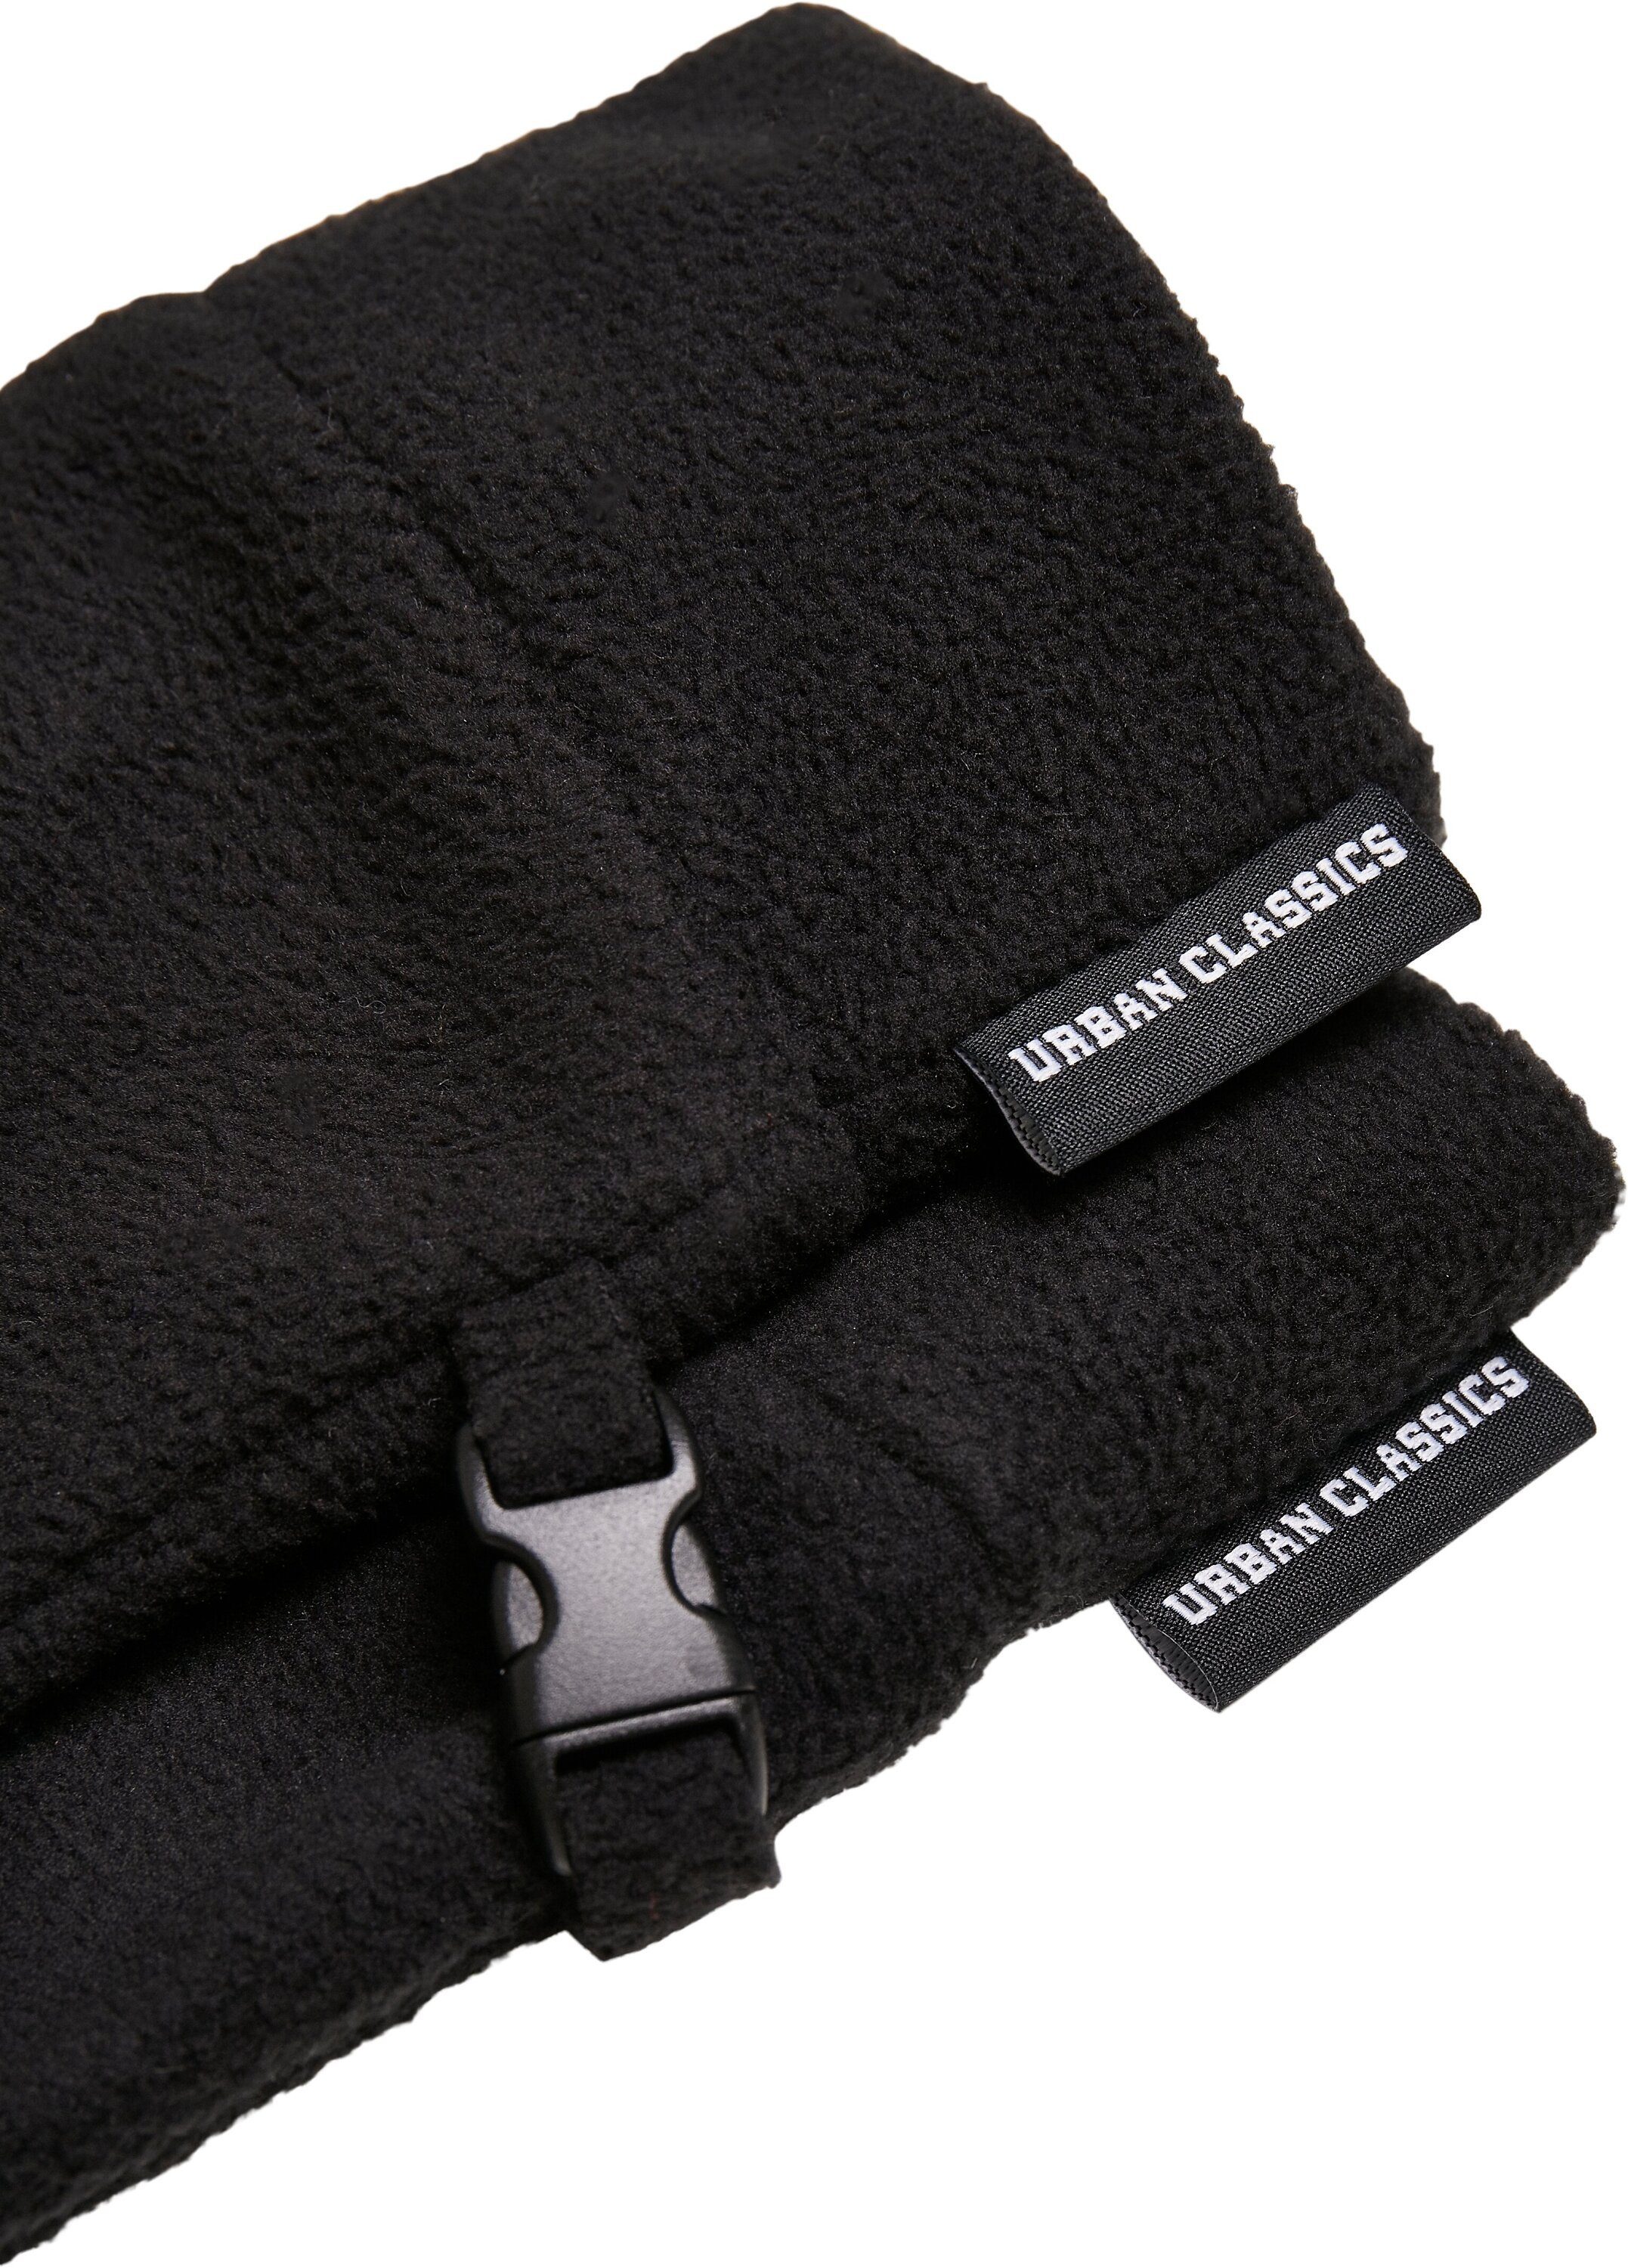 Baumwollhandschuhe Fleece Winter URBAN CLASSICS Accessoires Set